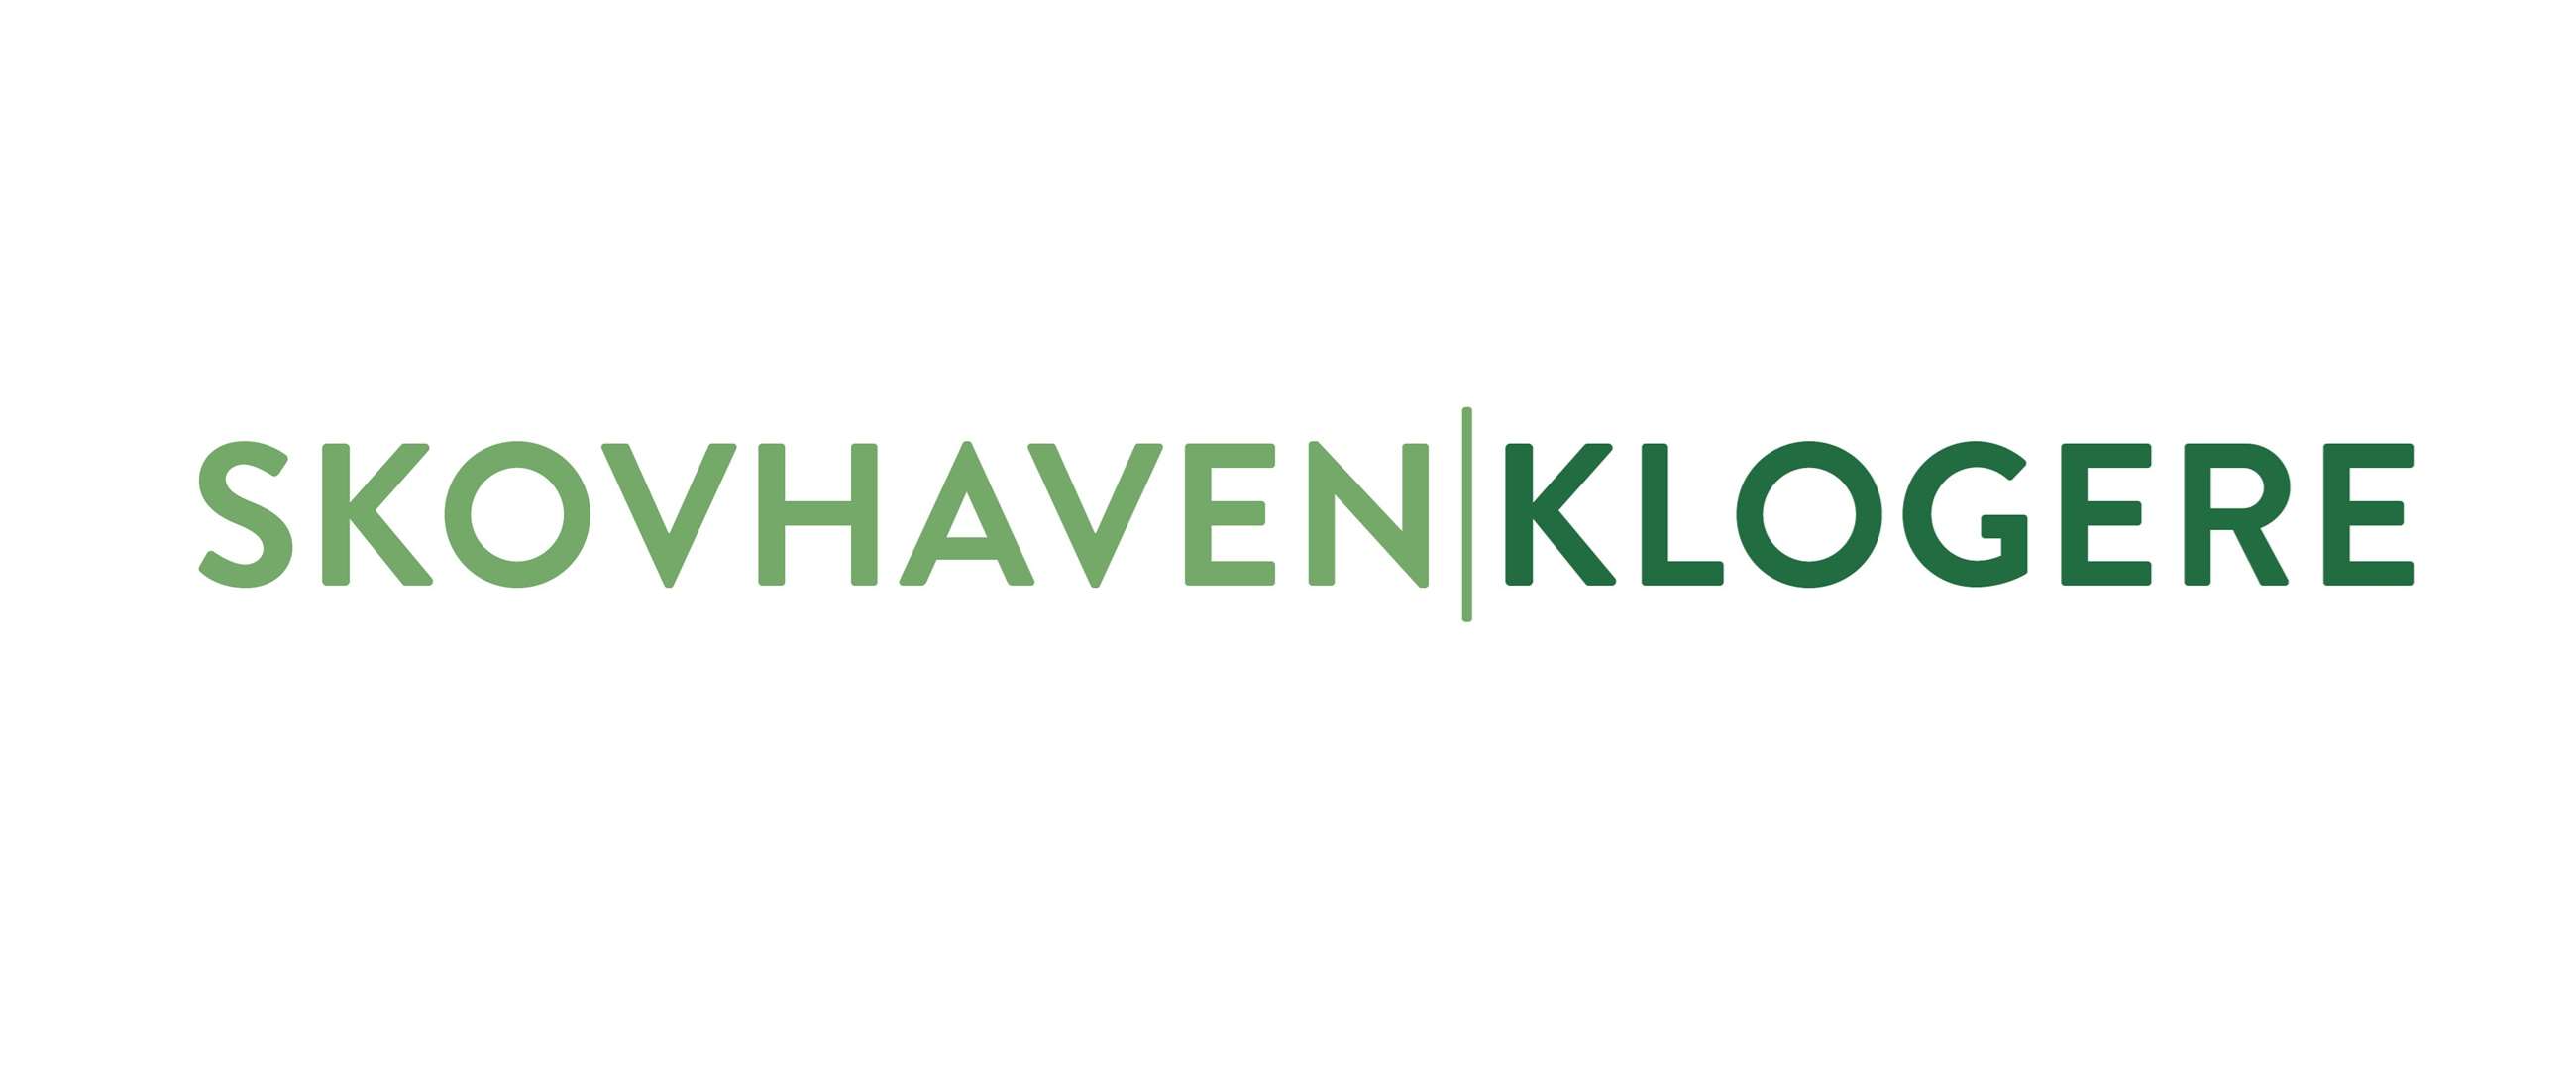 skovhaven_klogere_logo